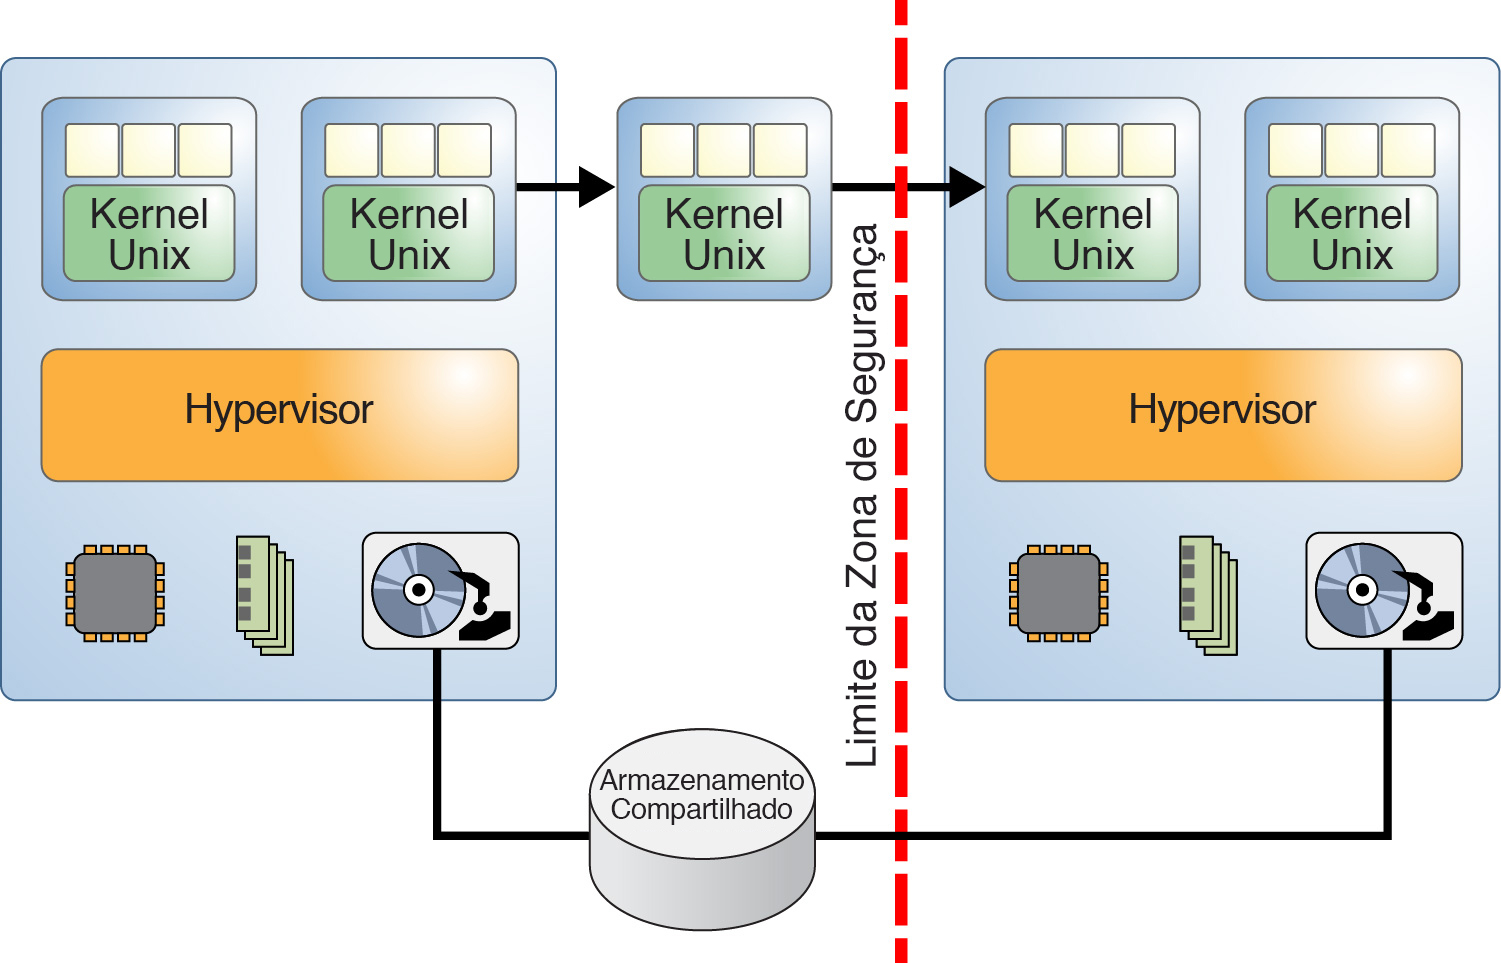 image:O gráfico mostra dois sistemas virtualizados divididos pelo limite de uma classe de segurança.